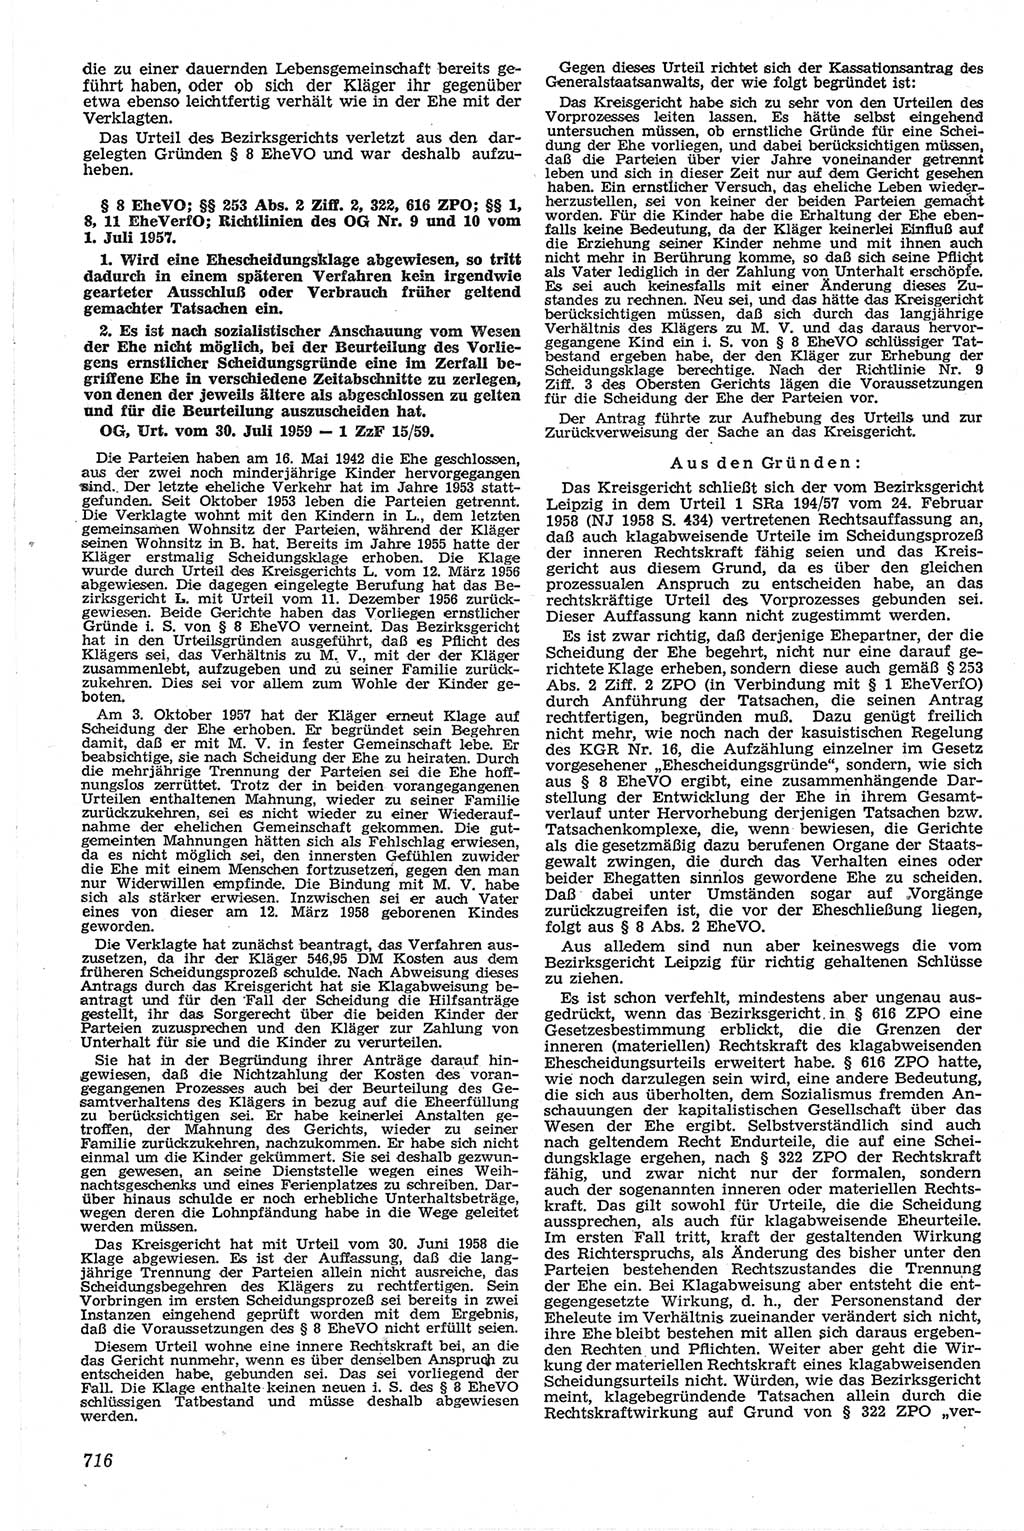 Neue Justiz (NJ), Zeitschrift für Recht und Rechtswissenschaft [Deutsche Demokratische Republik (DDR)], 13. Jahrgang 1959, Seite 716 (NJ DDR 1959, S. 716)